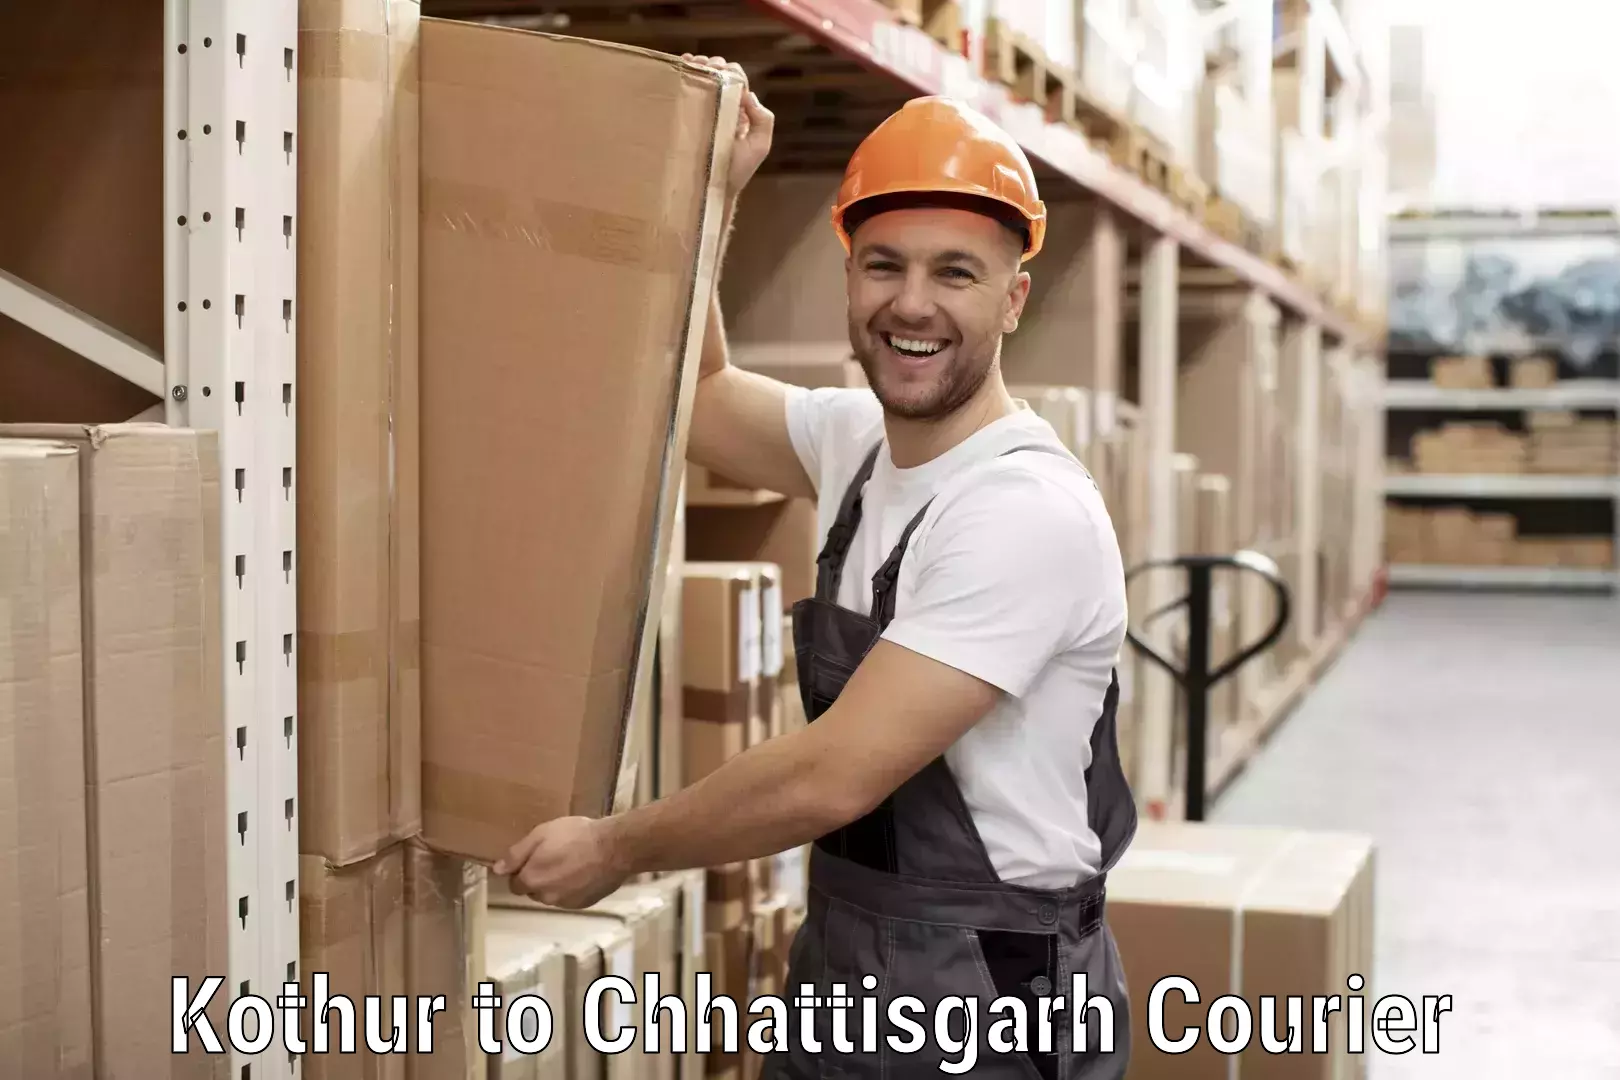 Courier service comparison Kothur to Baikunthpur